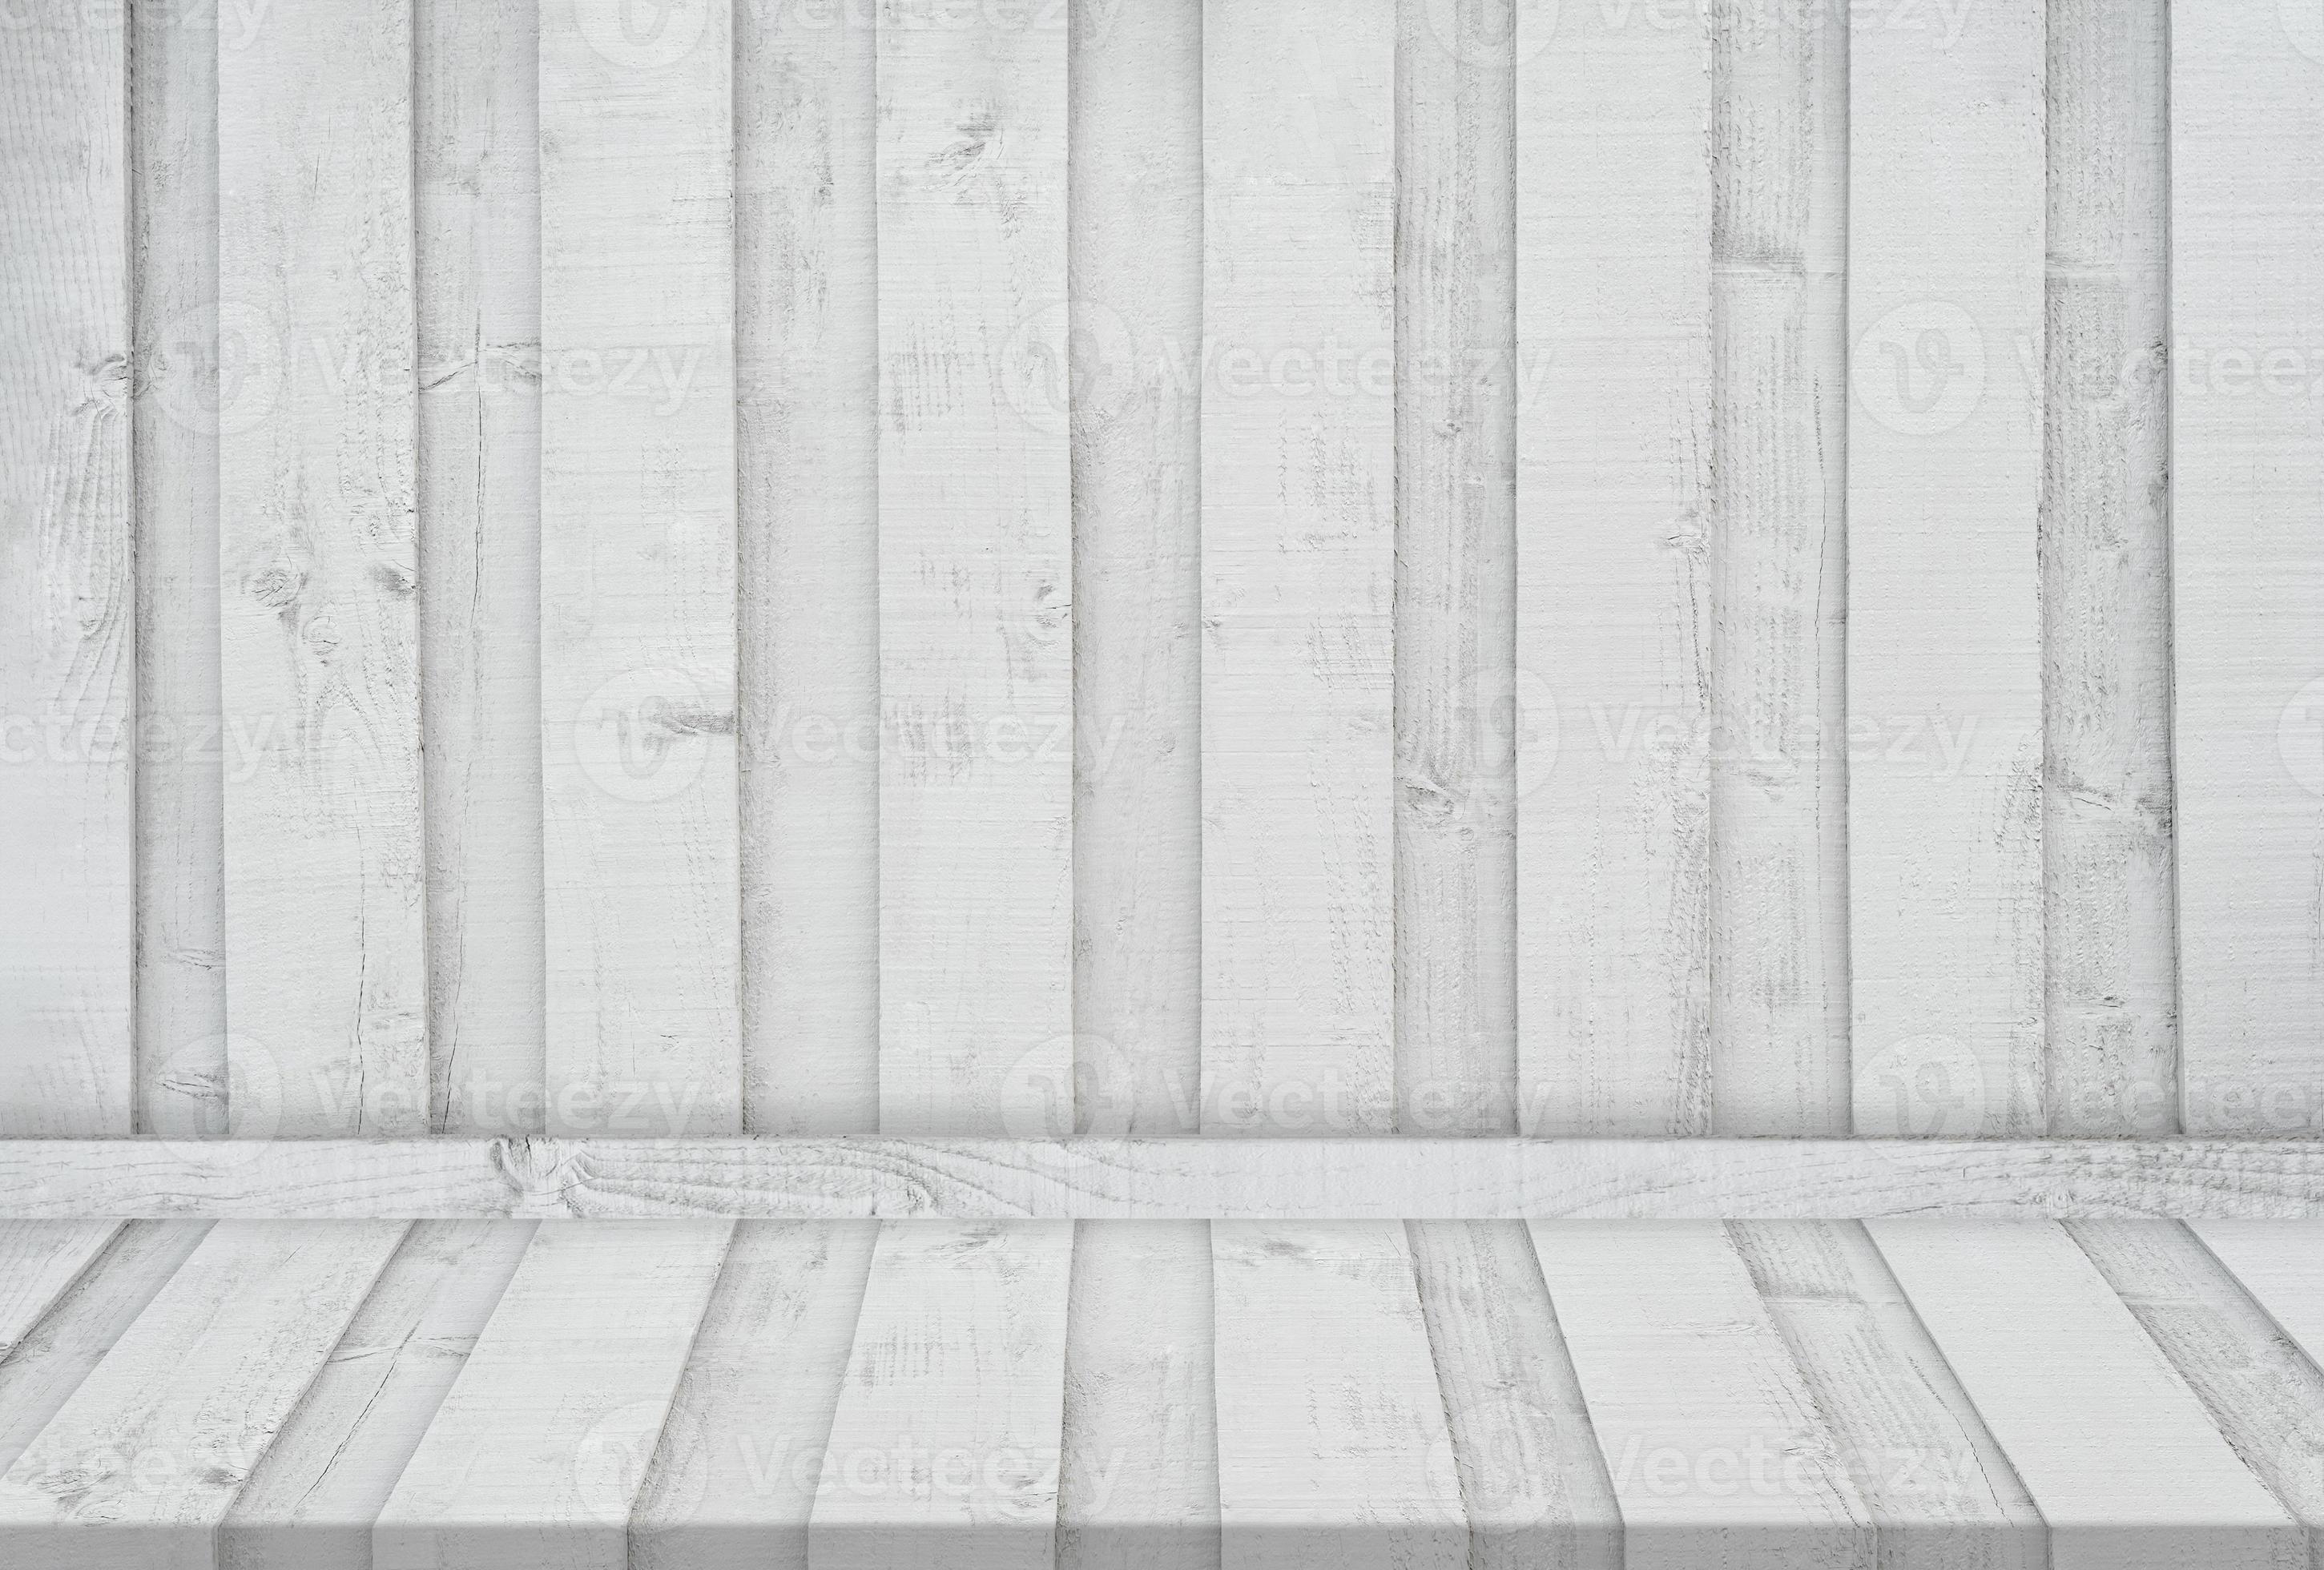 Với nền gỗ trắng cho phòng studio, bạn sẽ tạo ra một bài trình diễn sang trọng và chuyên nghiệp cho ảnh của bạn. Với bối cảnh đen trắng đầy tinh tế, nền gỗ trắng sẽ tạo ra một không gian rộng và thoáng cho ảnh của bạn. Xem hình ảnh để tận hưởng trải nghiệm này.